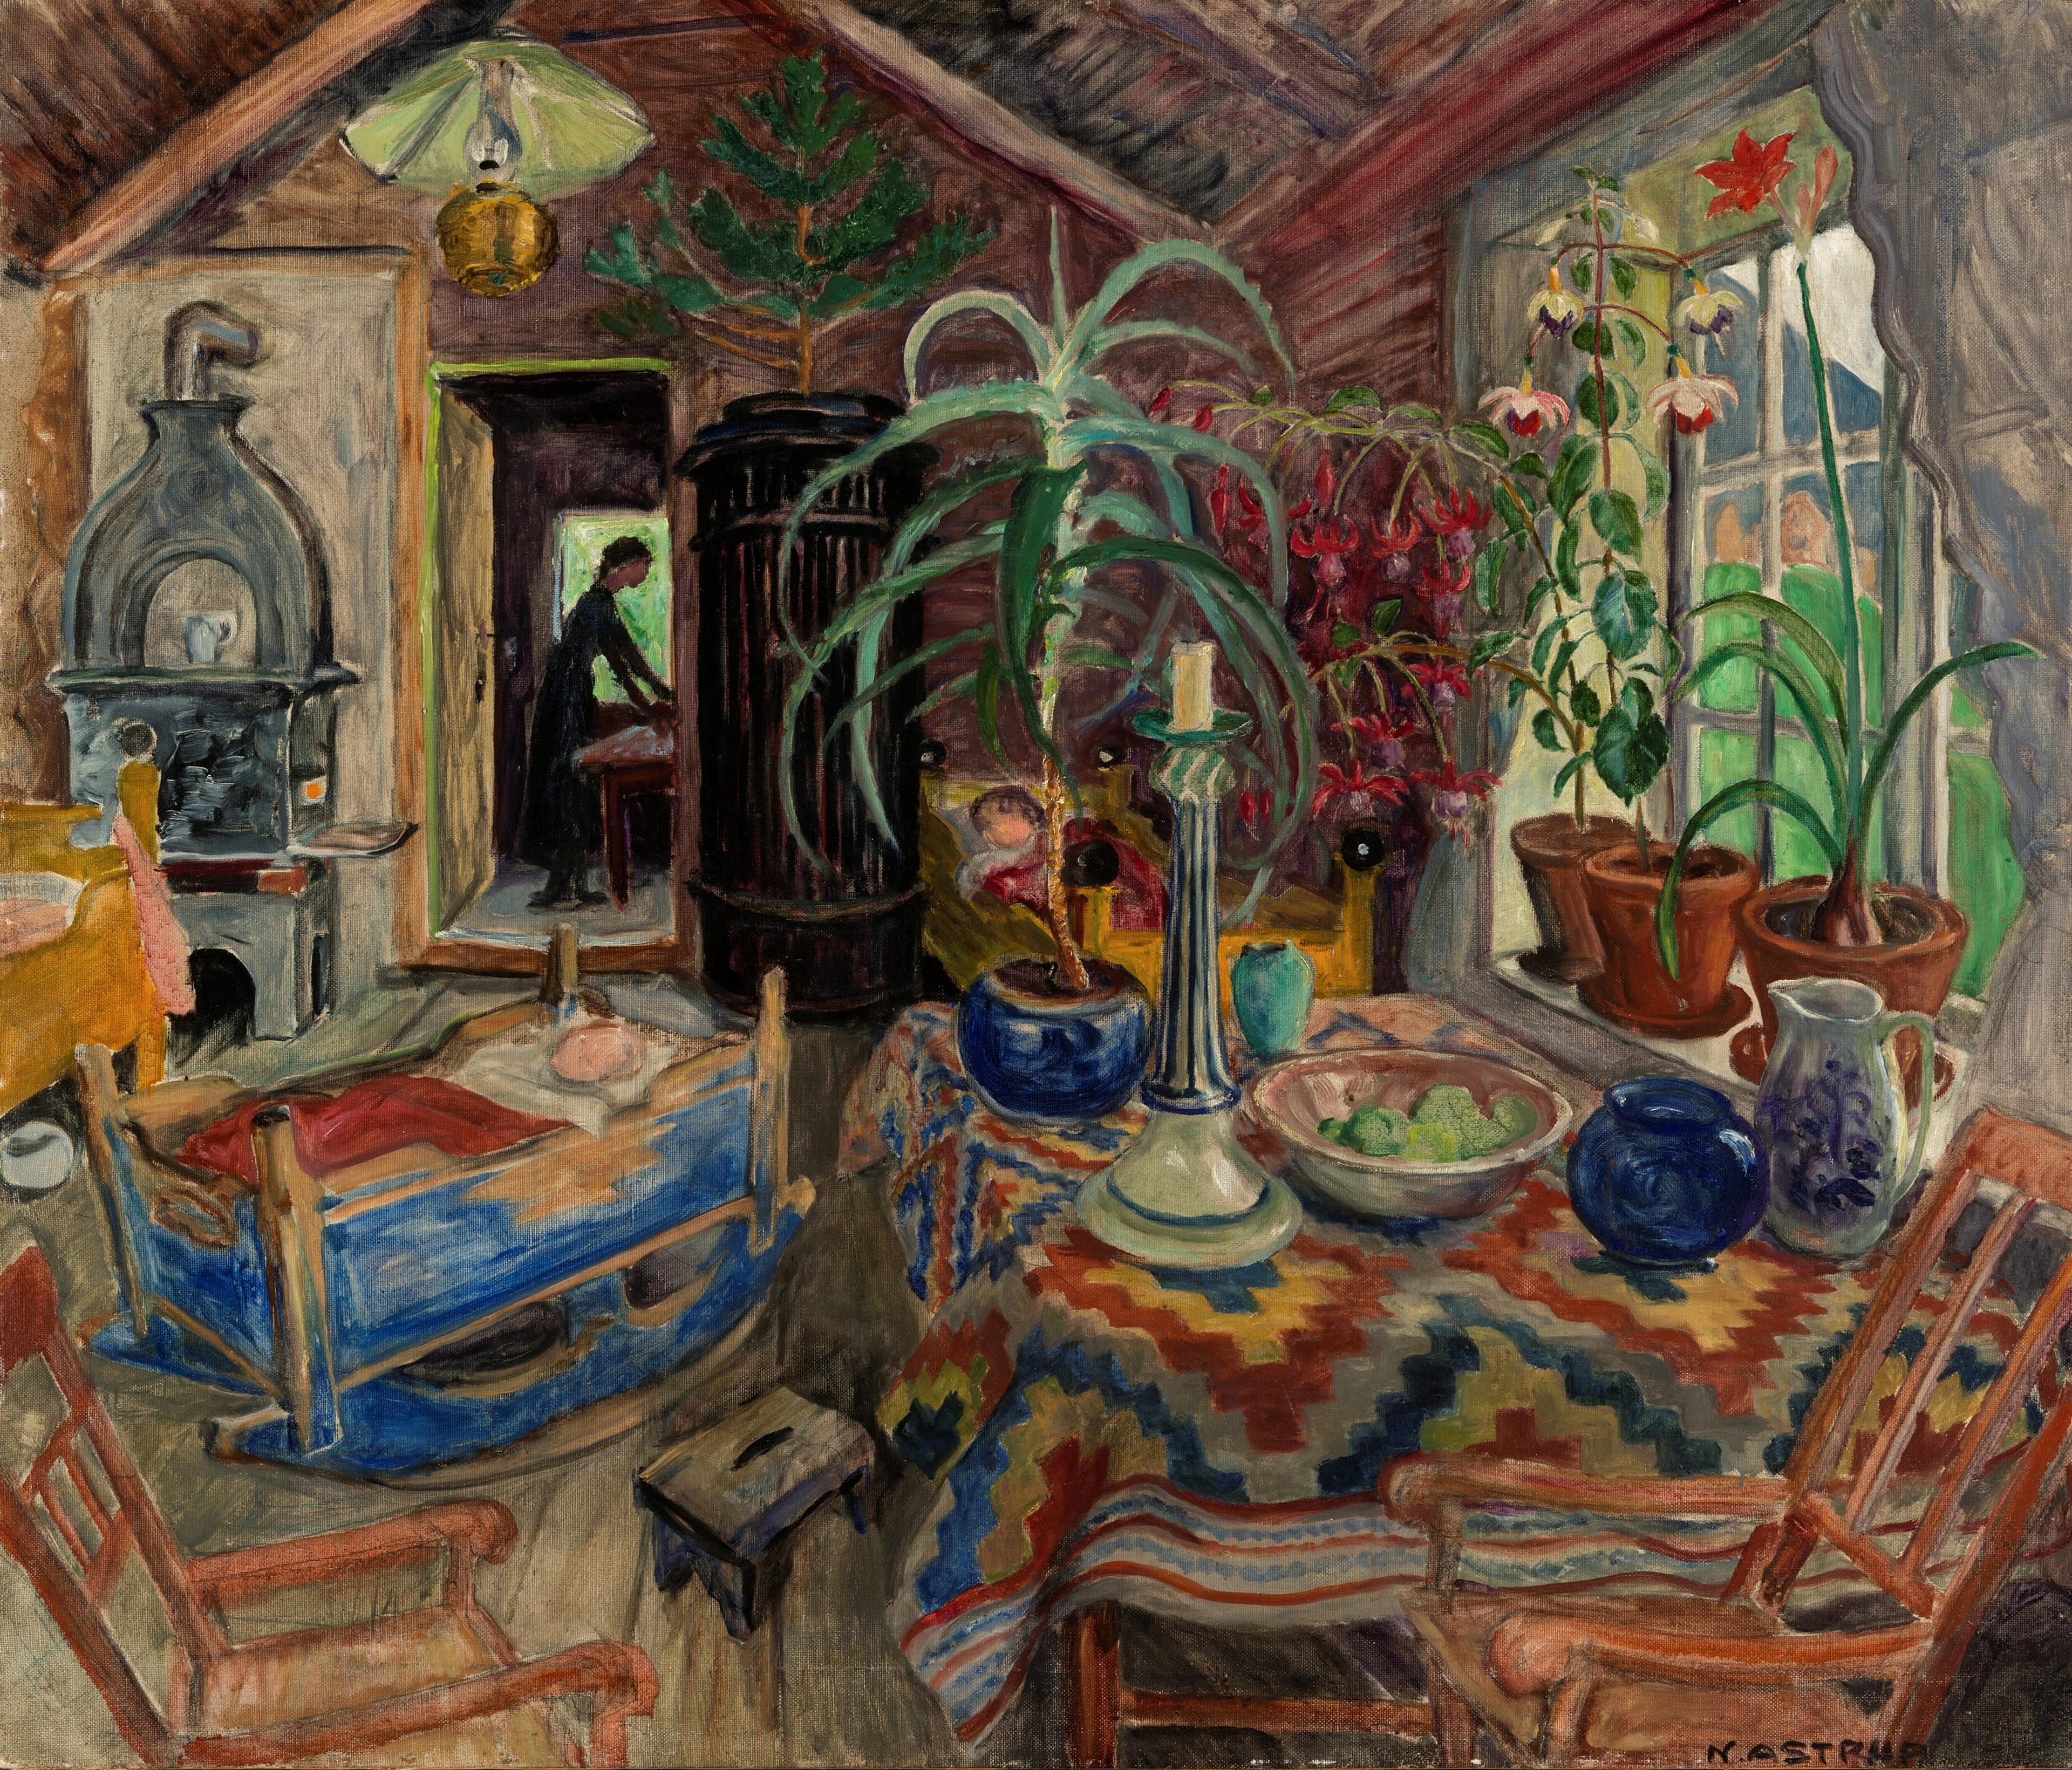 Et maleri av Nikolai Astrup, som viser et interiør skildret i rike farger. En kvinne i bakgrunnen, med to barn i forgrunnen, liggende i en vugge og en seng.